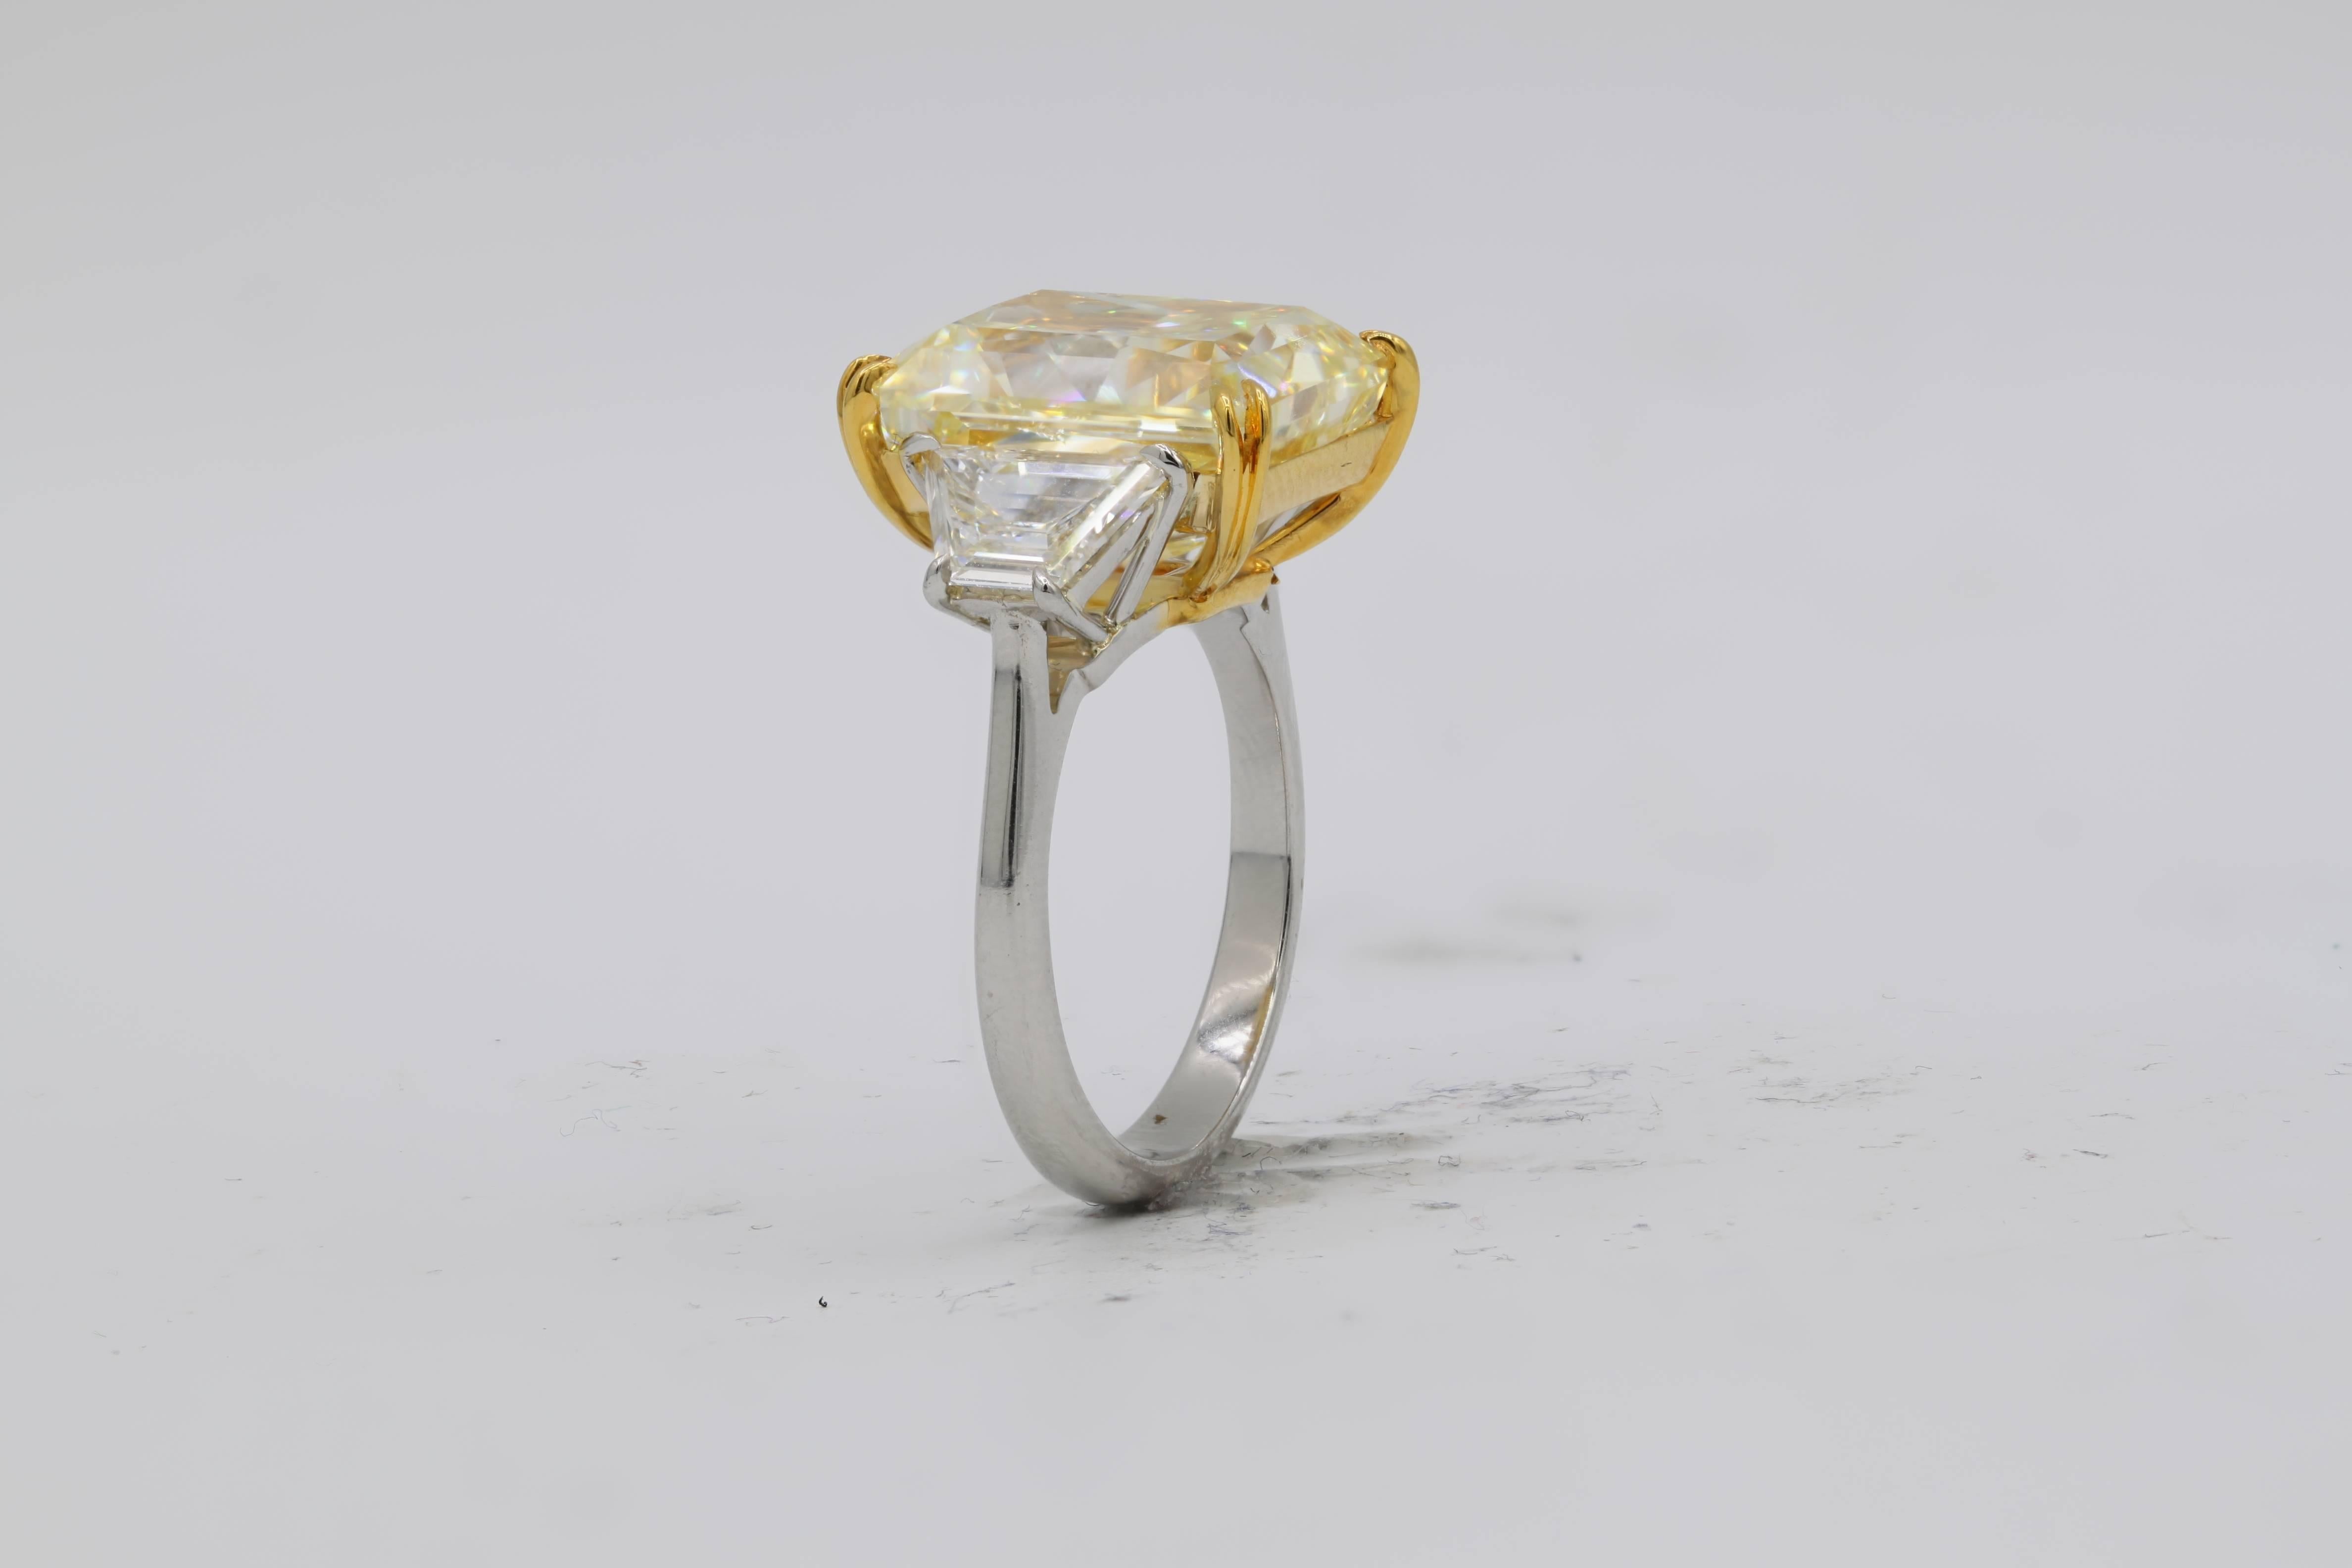 Atemberaubender kanariengelber Diamant mit drei Steinen  Ring, sehr seltener länglicher Radiant, schöne leuchtende Farbe.
Der Mittelstein ist 10,03 Karat Fancy Yellow SI1 in Clarity Radiant. Mit 1,21 Karat Trapezoiden auf jeder Seite besetzt. In